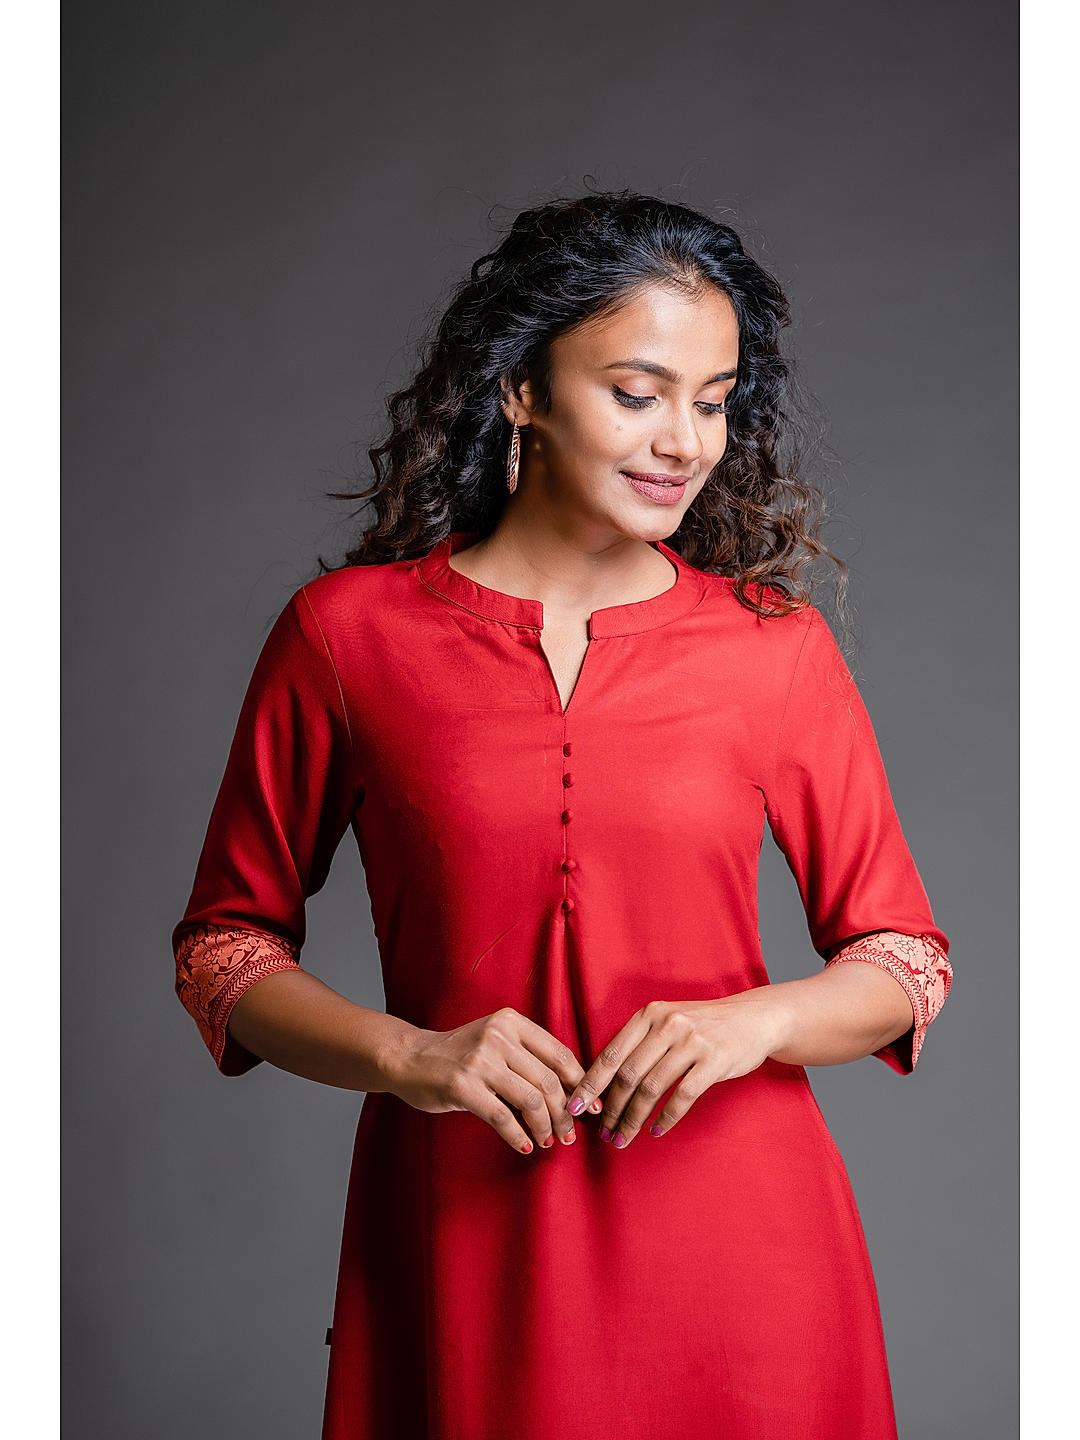 New Readymade Kurtis All size Free Express shipping Beautiful Indian Dress  Kurti | eBay